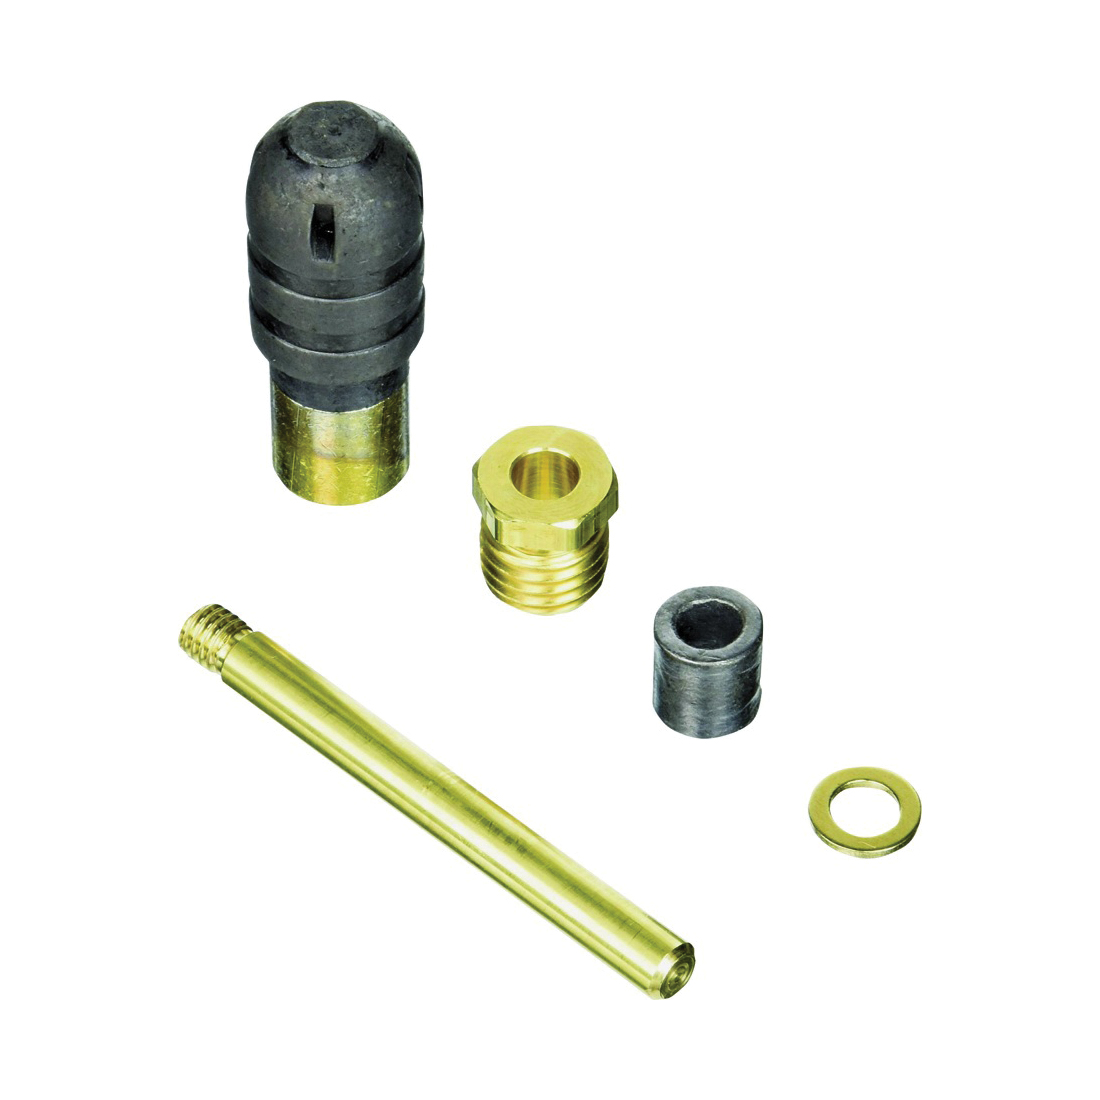 RK-Y34 Repair Kit, Steel, For: Y34-4, Y34-5 Model Plunger, 5-Piece